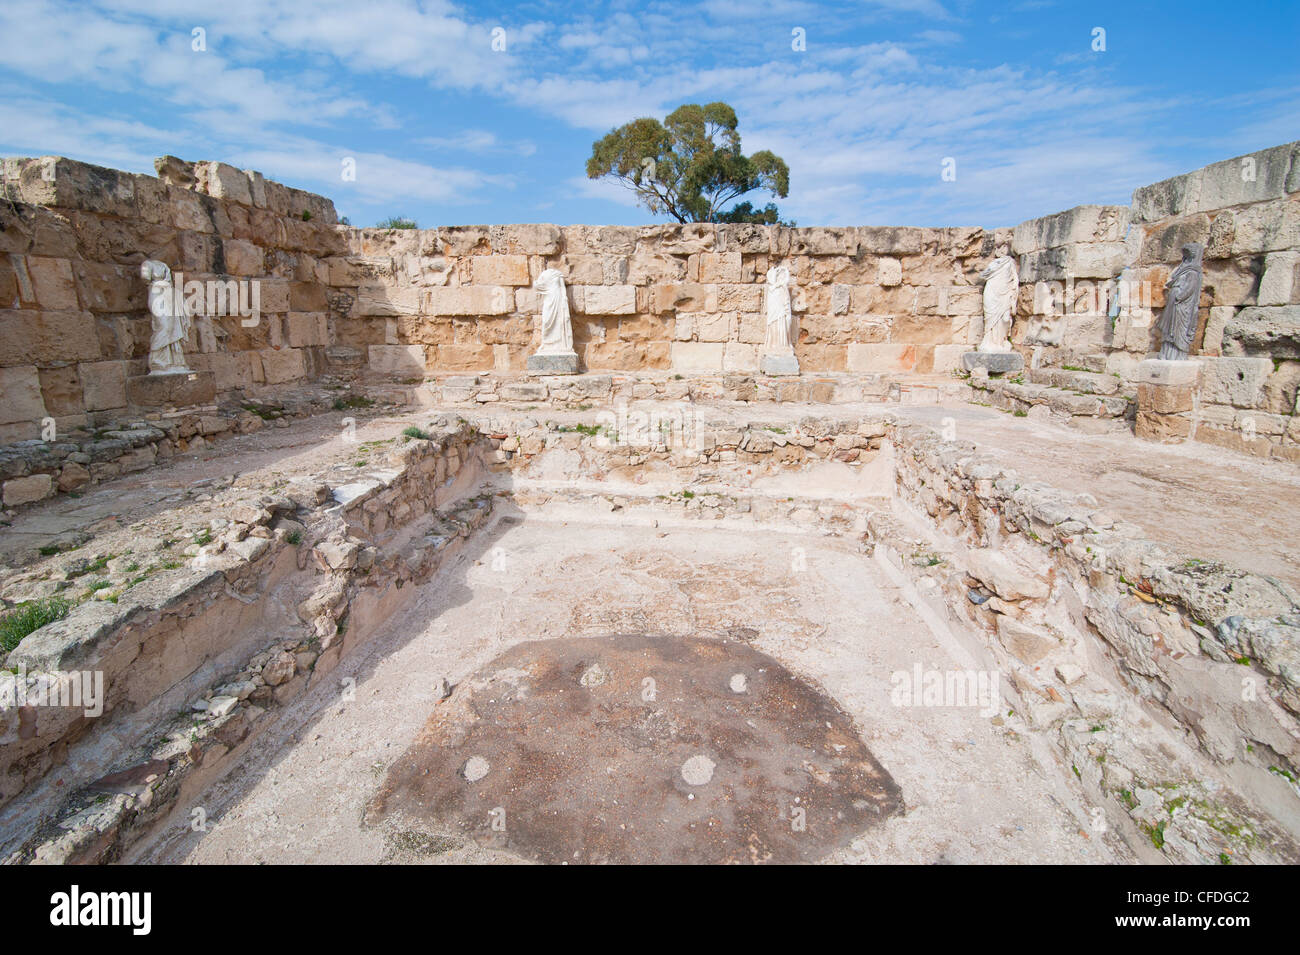 Römische Ruinen von Salamis, türkischen Teil von Zypern, Zypern, Europa Stockfoto